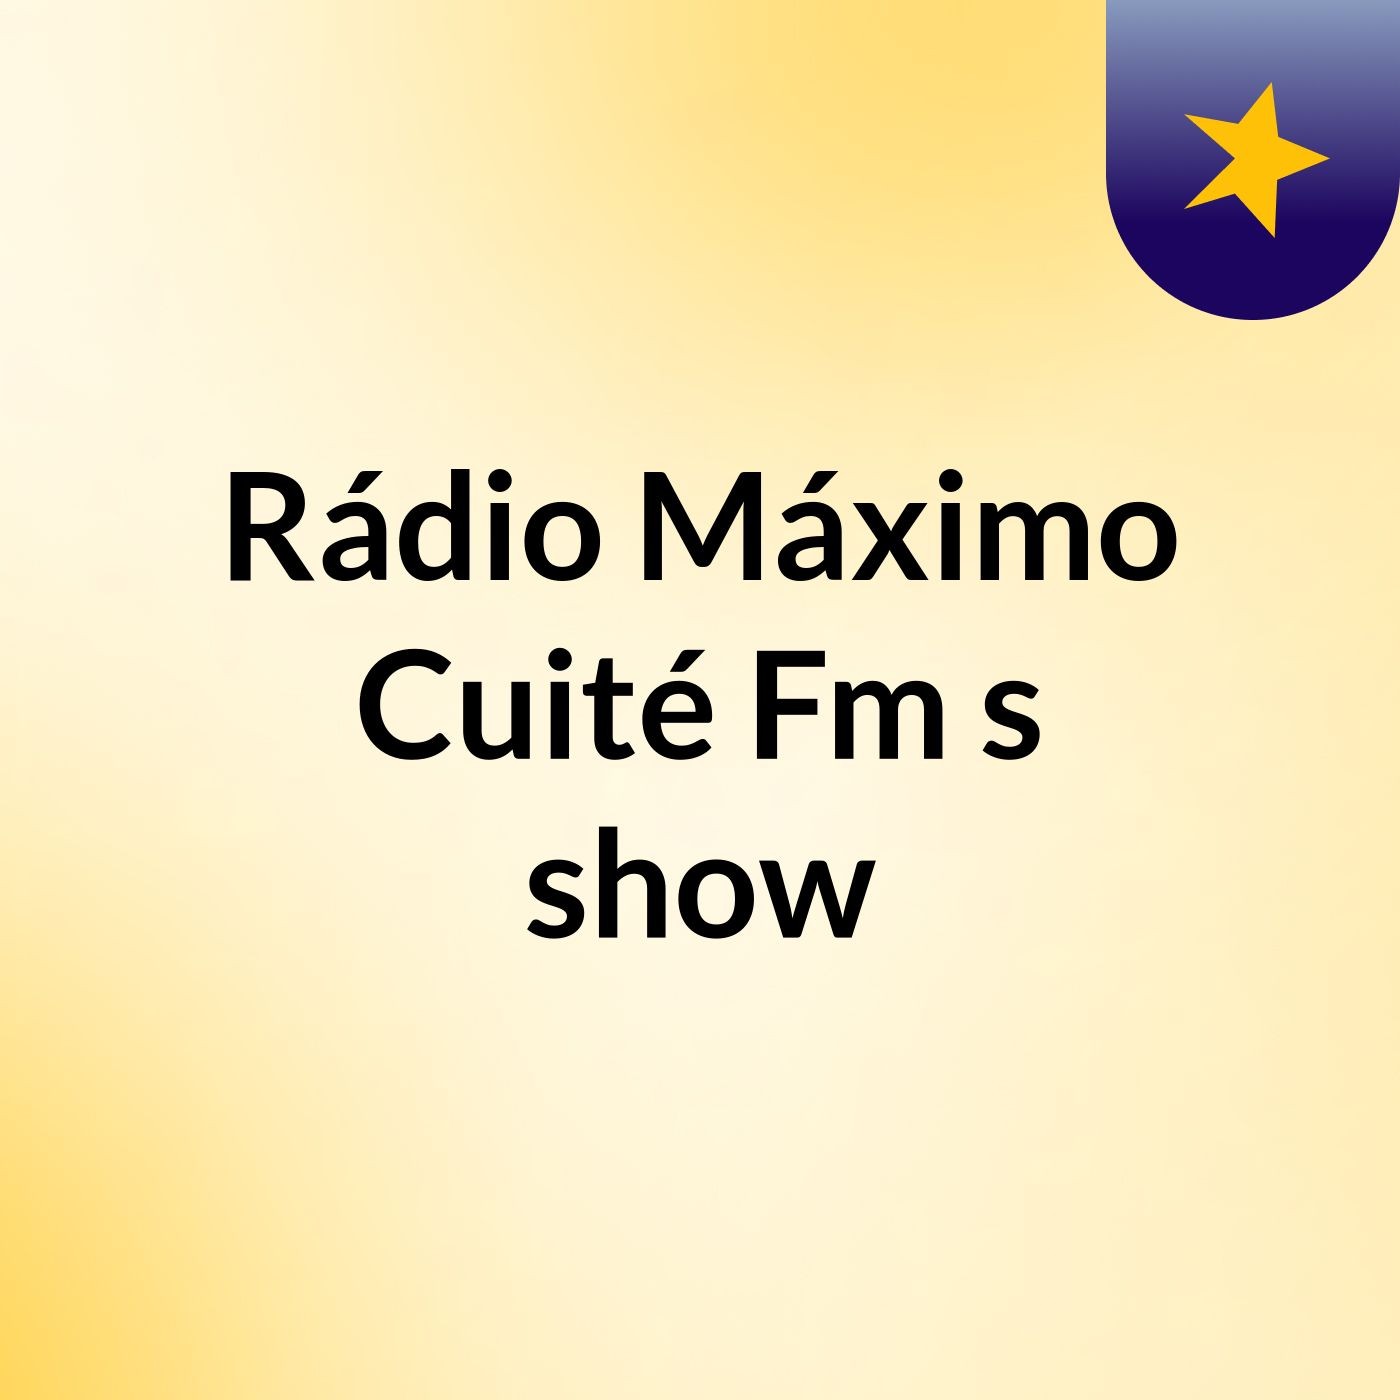 Rádio Máximo Cuité Fm's show